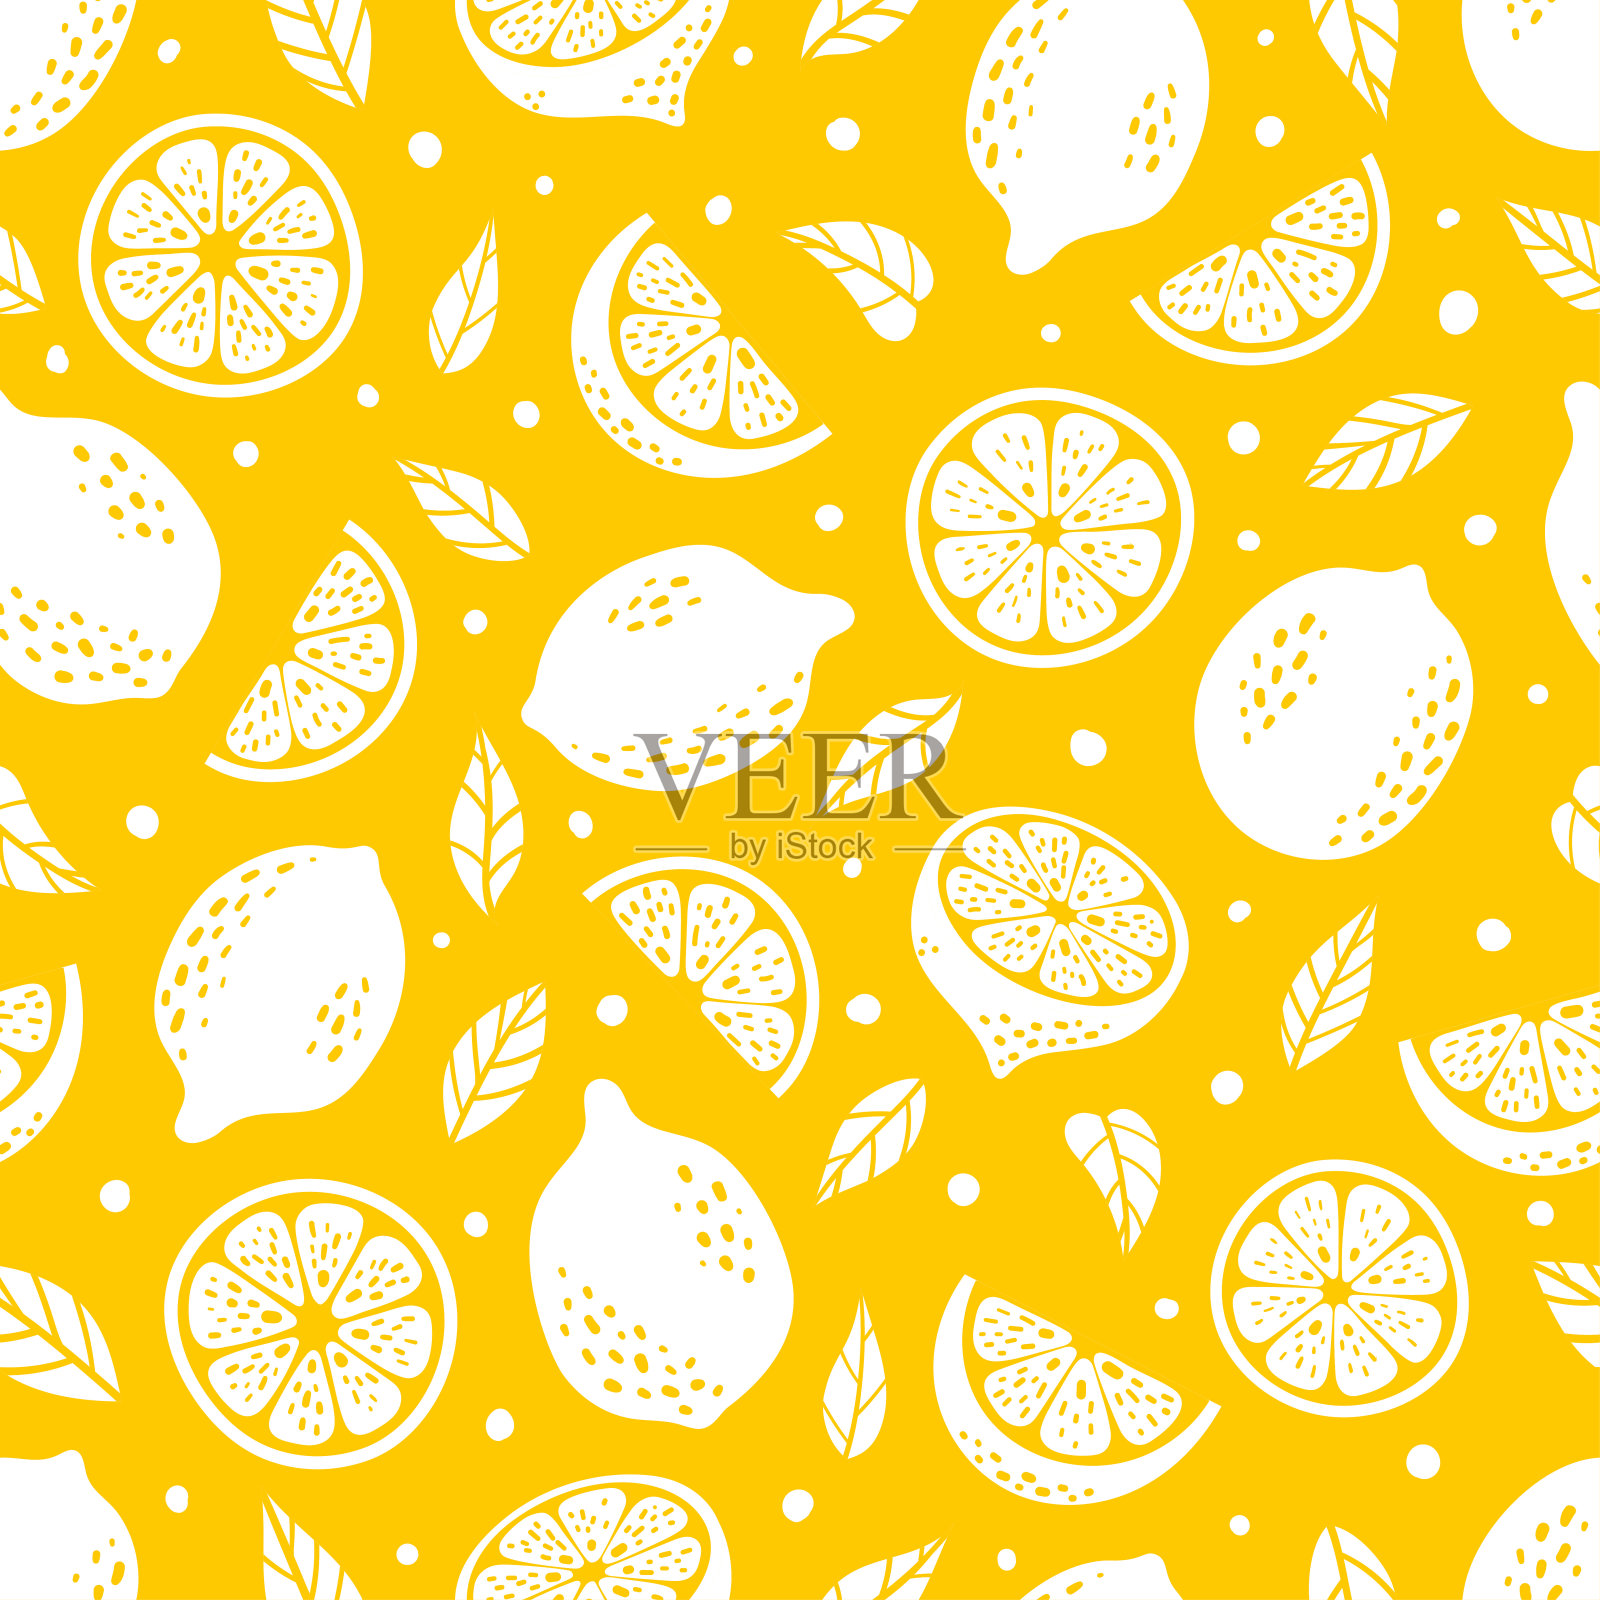 可爱的向量柠檬热带无缝模式。你可以在黄色的背景上画出夏日新鲜水果片、叶子、半片和整个柠檬的轮廓。柠檬水手绘重复纹理插画图片素材